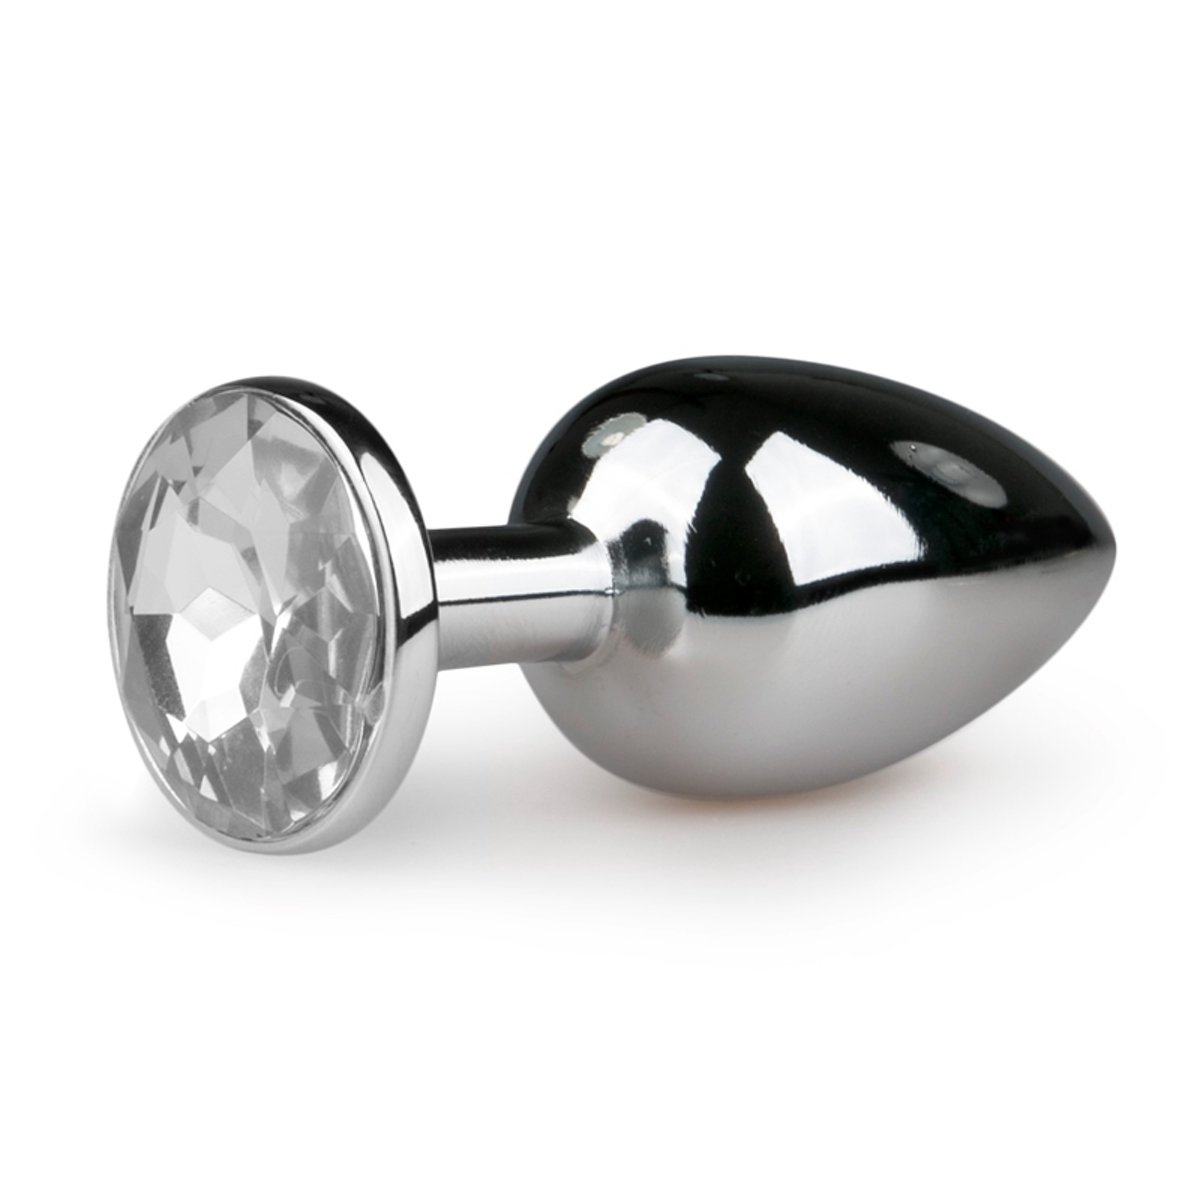 bol.com | Zilveren buttplug met diamant